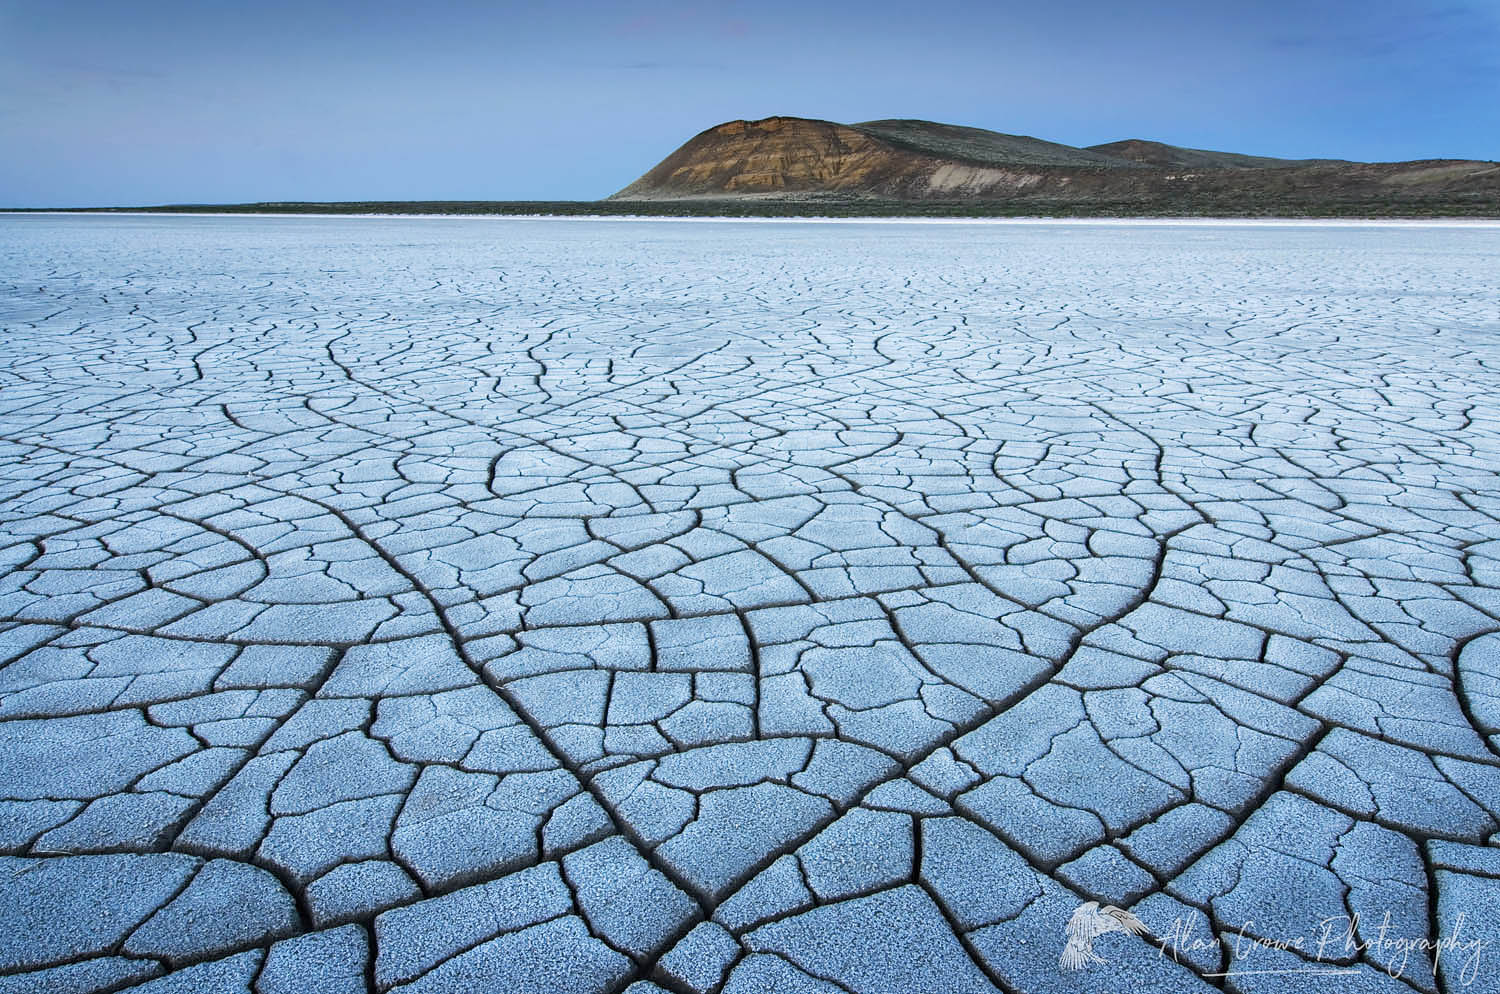 Patterns of cracked mud on dry lakebed of Harney Lake, Malheur National Wildlife Refuge, Oregon #48420